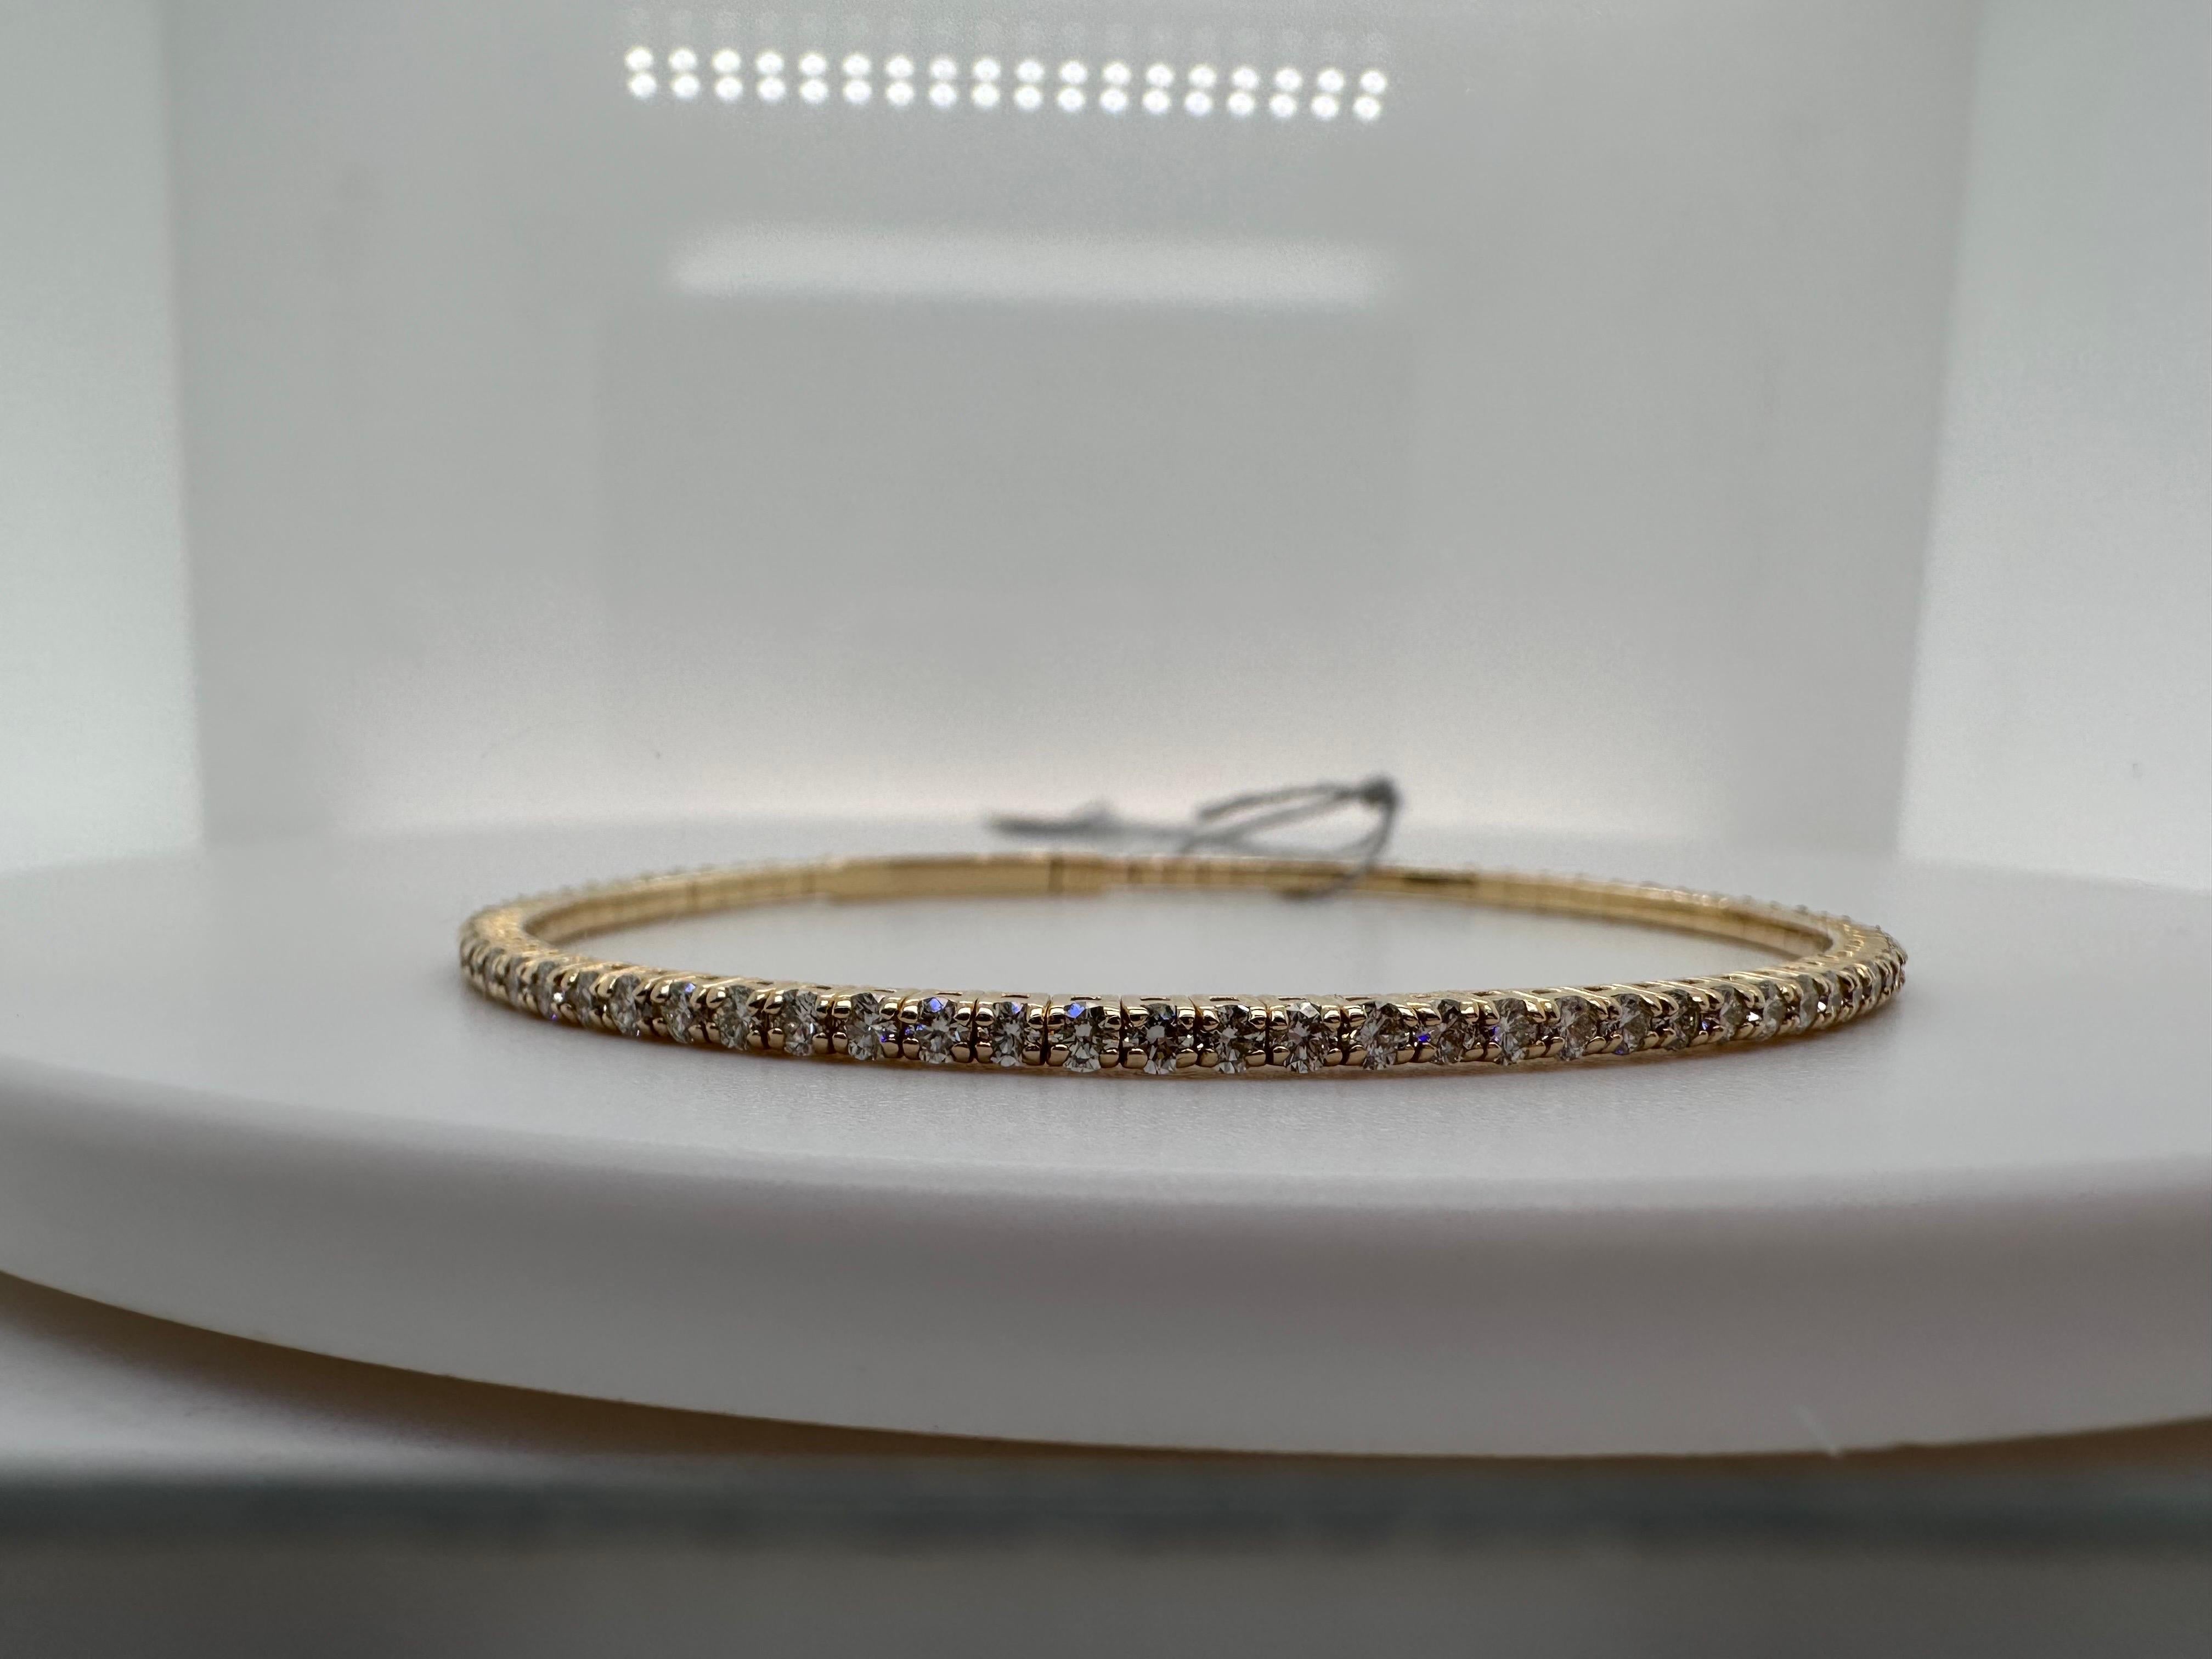 Schlichtes und elegantes Diamantarmband aus 14KT Gold, super bequem und flexibel!

Metall Typ: 14KT
Gramm Gewicht:8,20 Gramm 
Natürliche(r) Diamant(en): 
Farbe: G
Schliff:Runder Brillant
Karat: 2,25ct
Klarheit: VS (Durchschnitt)
Artikel: